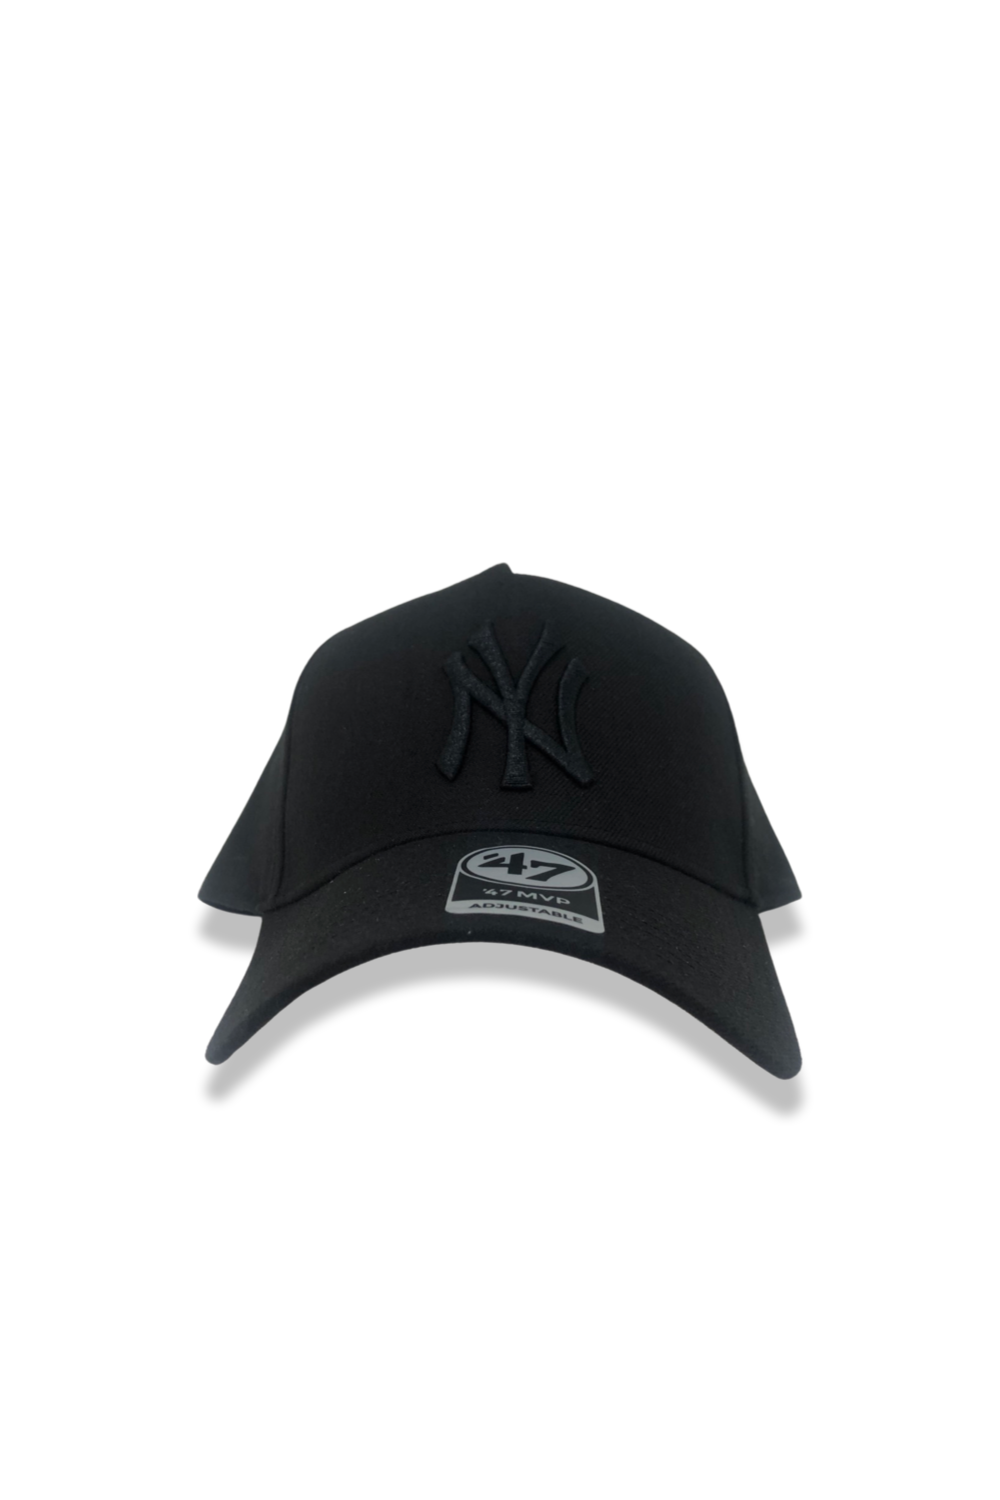 New York Yankees Black/White '47 MVP DT Snapback